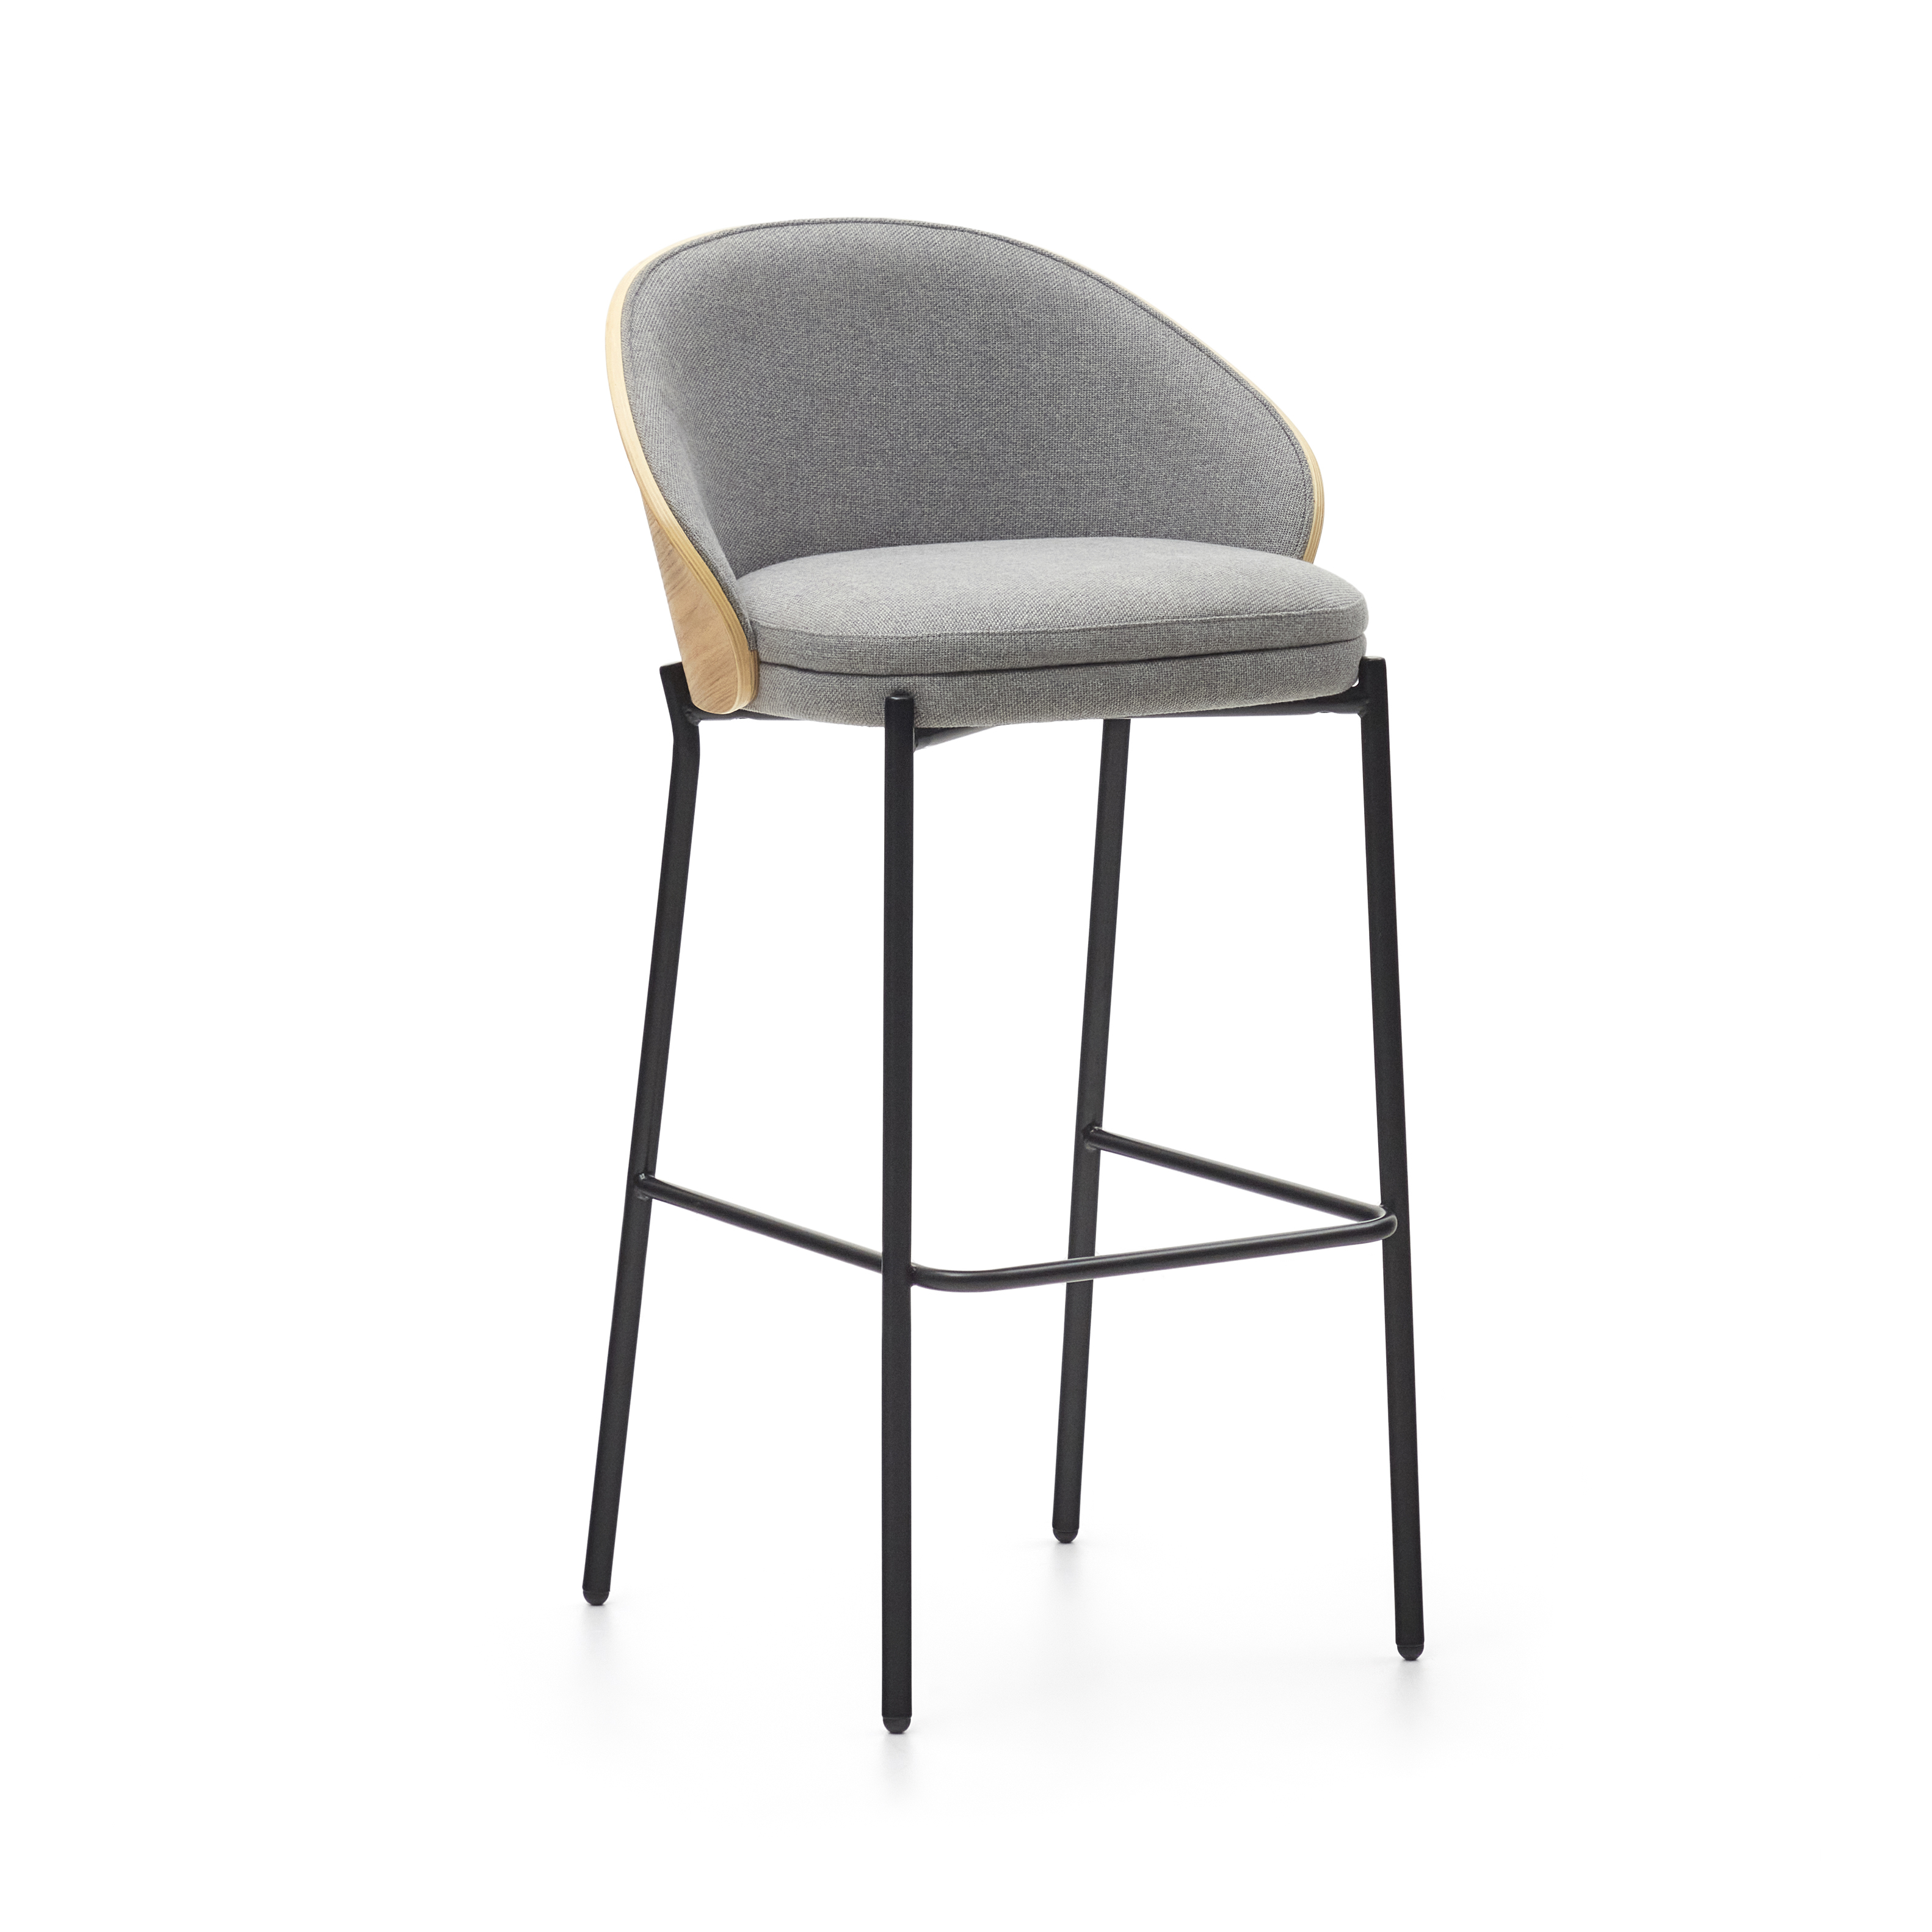 LAFORMA Eamy barstol, med ryggstöd och fotstöd - ljusgrått tyg, naturlig askfaner och svart stål